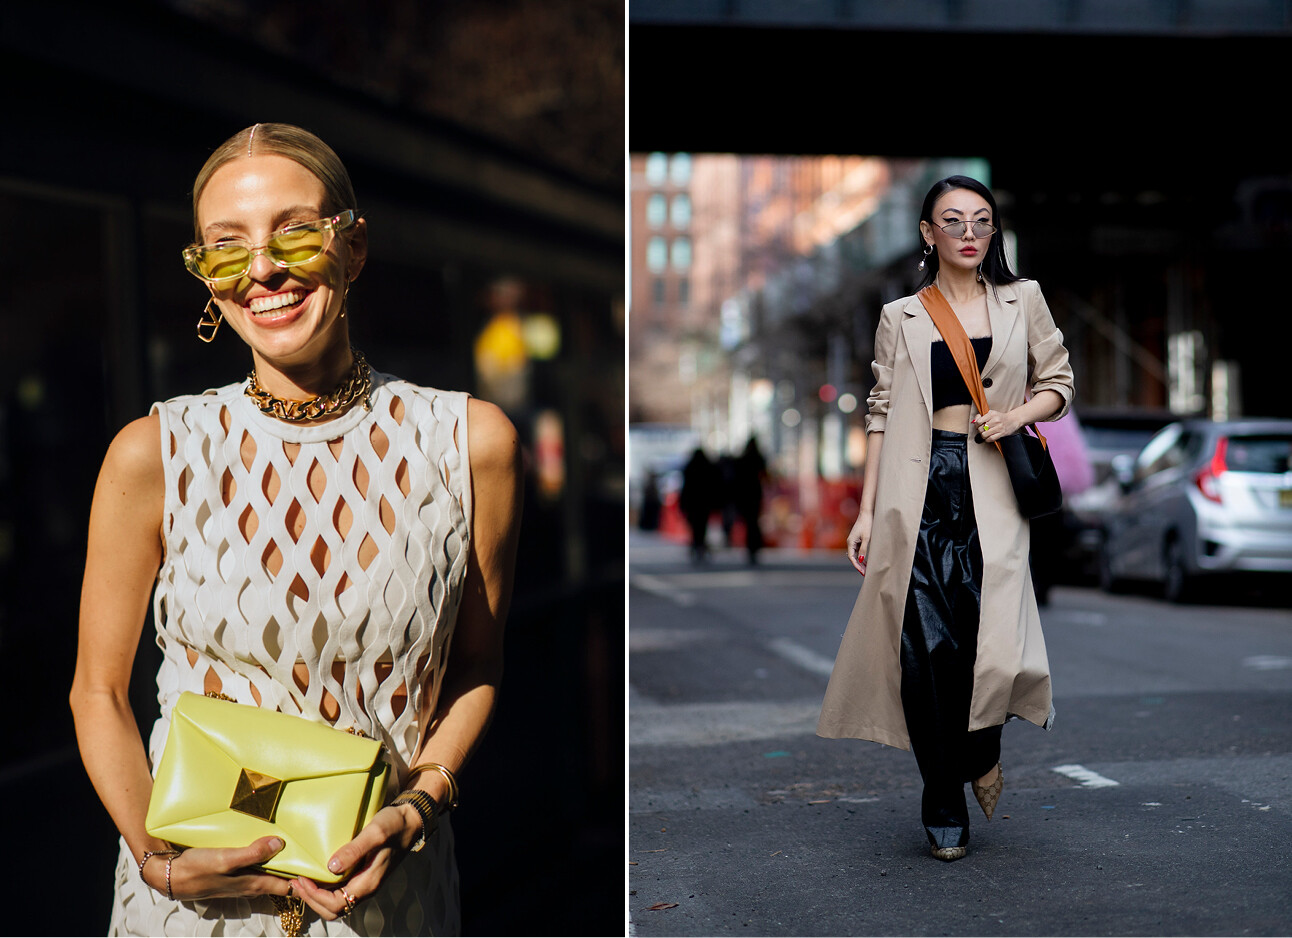 modevolk loopt met zonnebrillen over straat